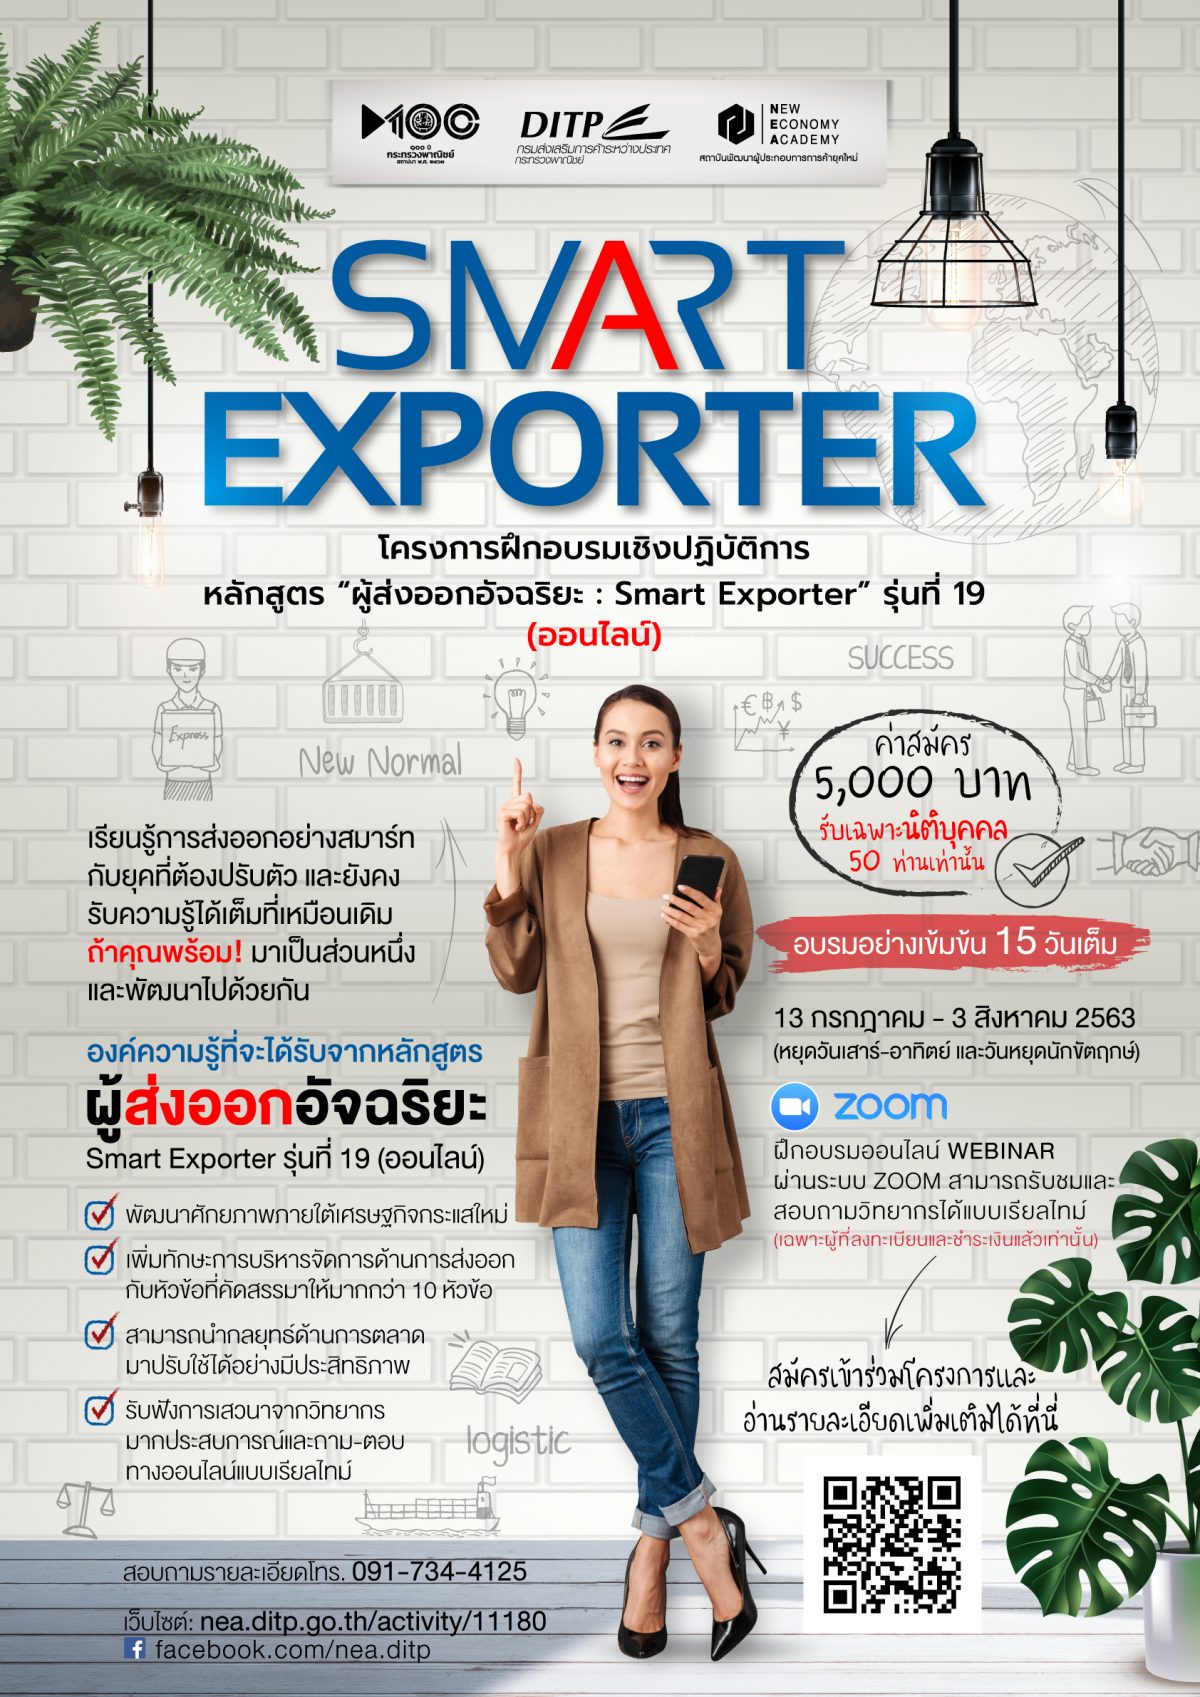 ดีไอทีพี การ์ดไม่ตกเปิดกลยุทธ์ดึงตัวเลขส่งออกไทย สร้างผู้ส่งออกอัจฉริยะ ในยุค New Normal ทางรอดธุรกิจไทยด้วยเครือข่ายครอบครัว Smart Exporter